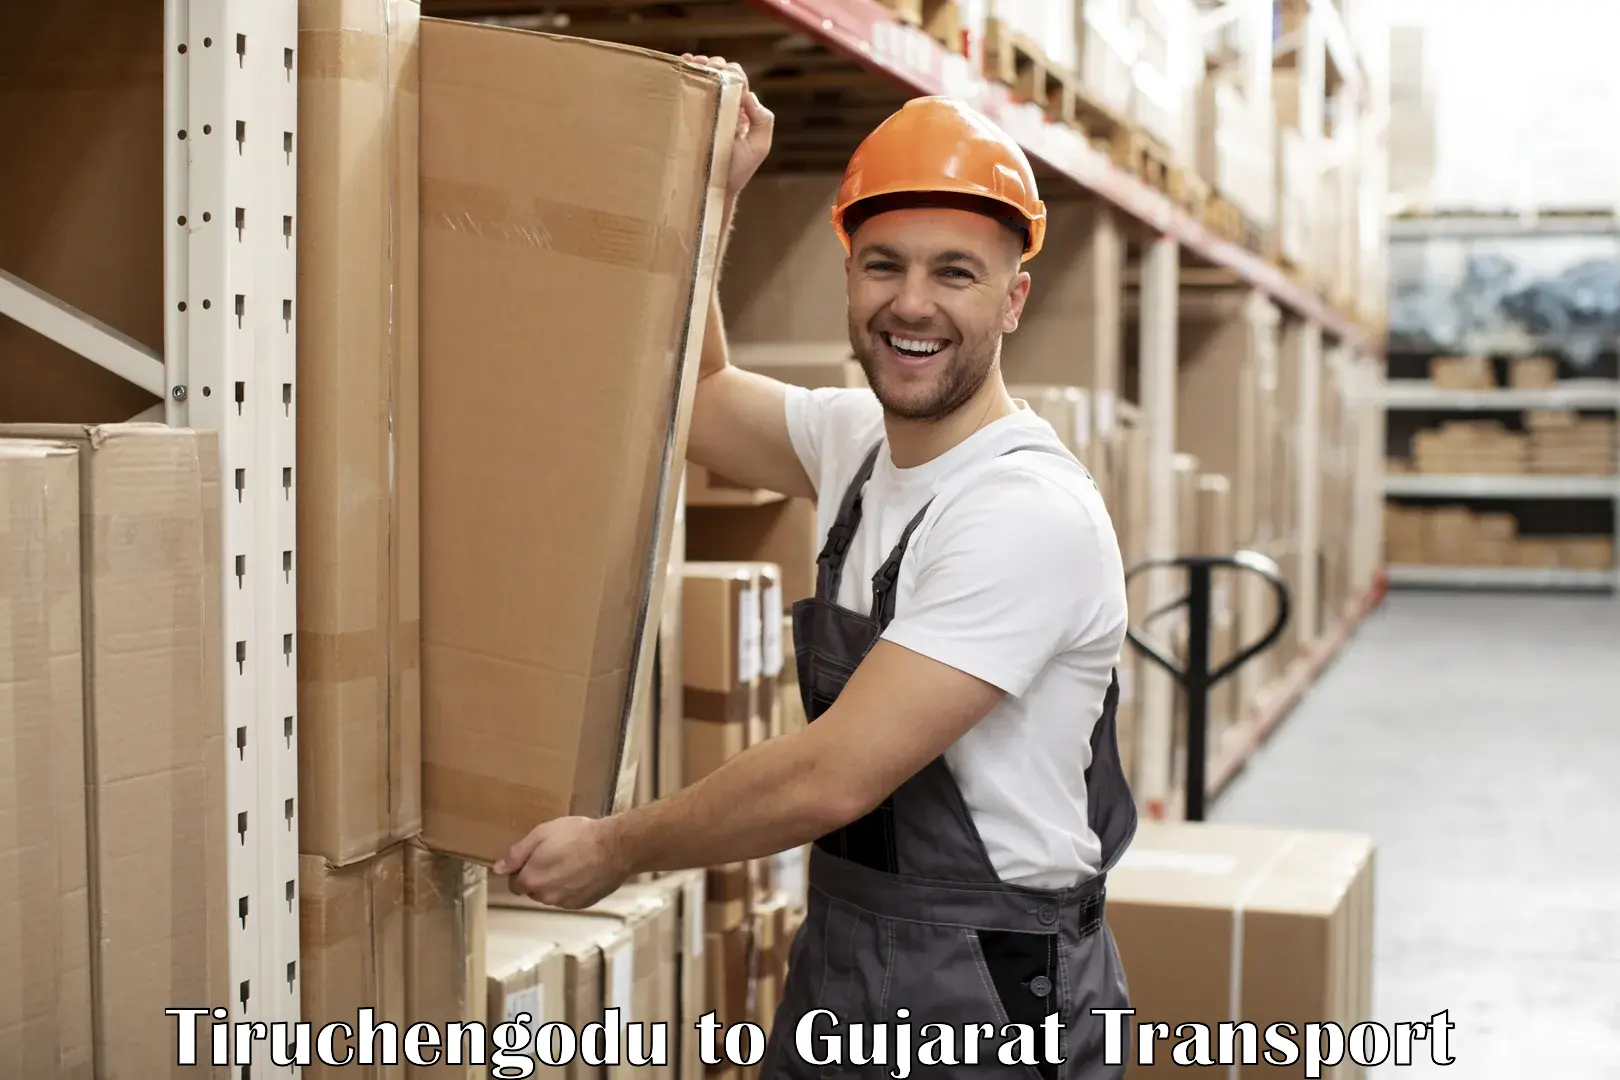 Daily transport service Tiruchengodu to Gujarat